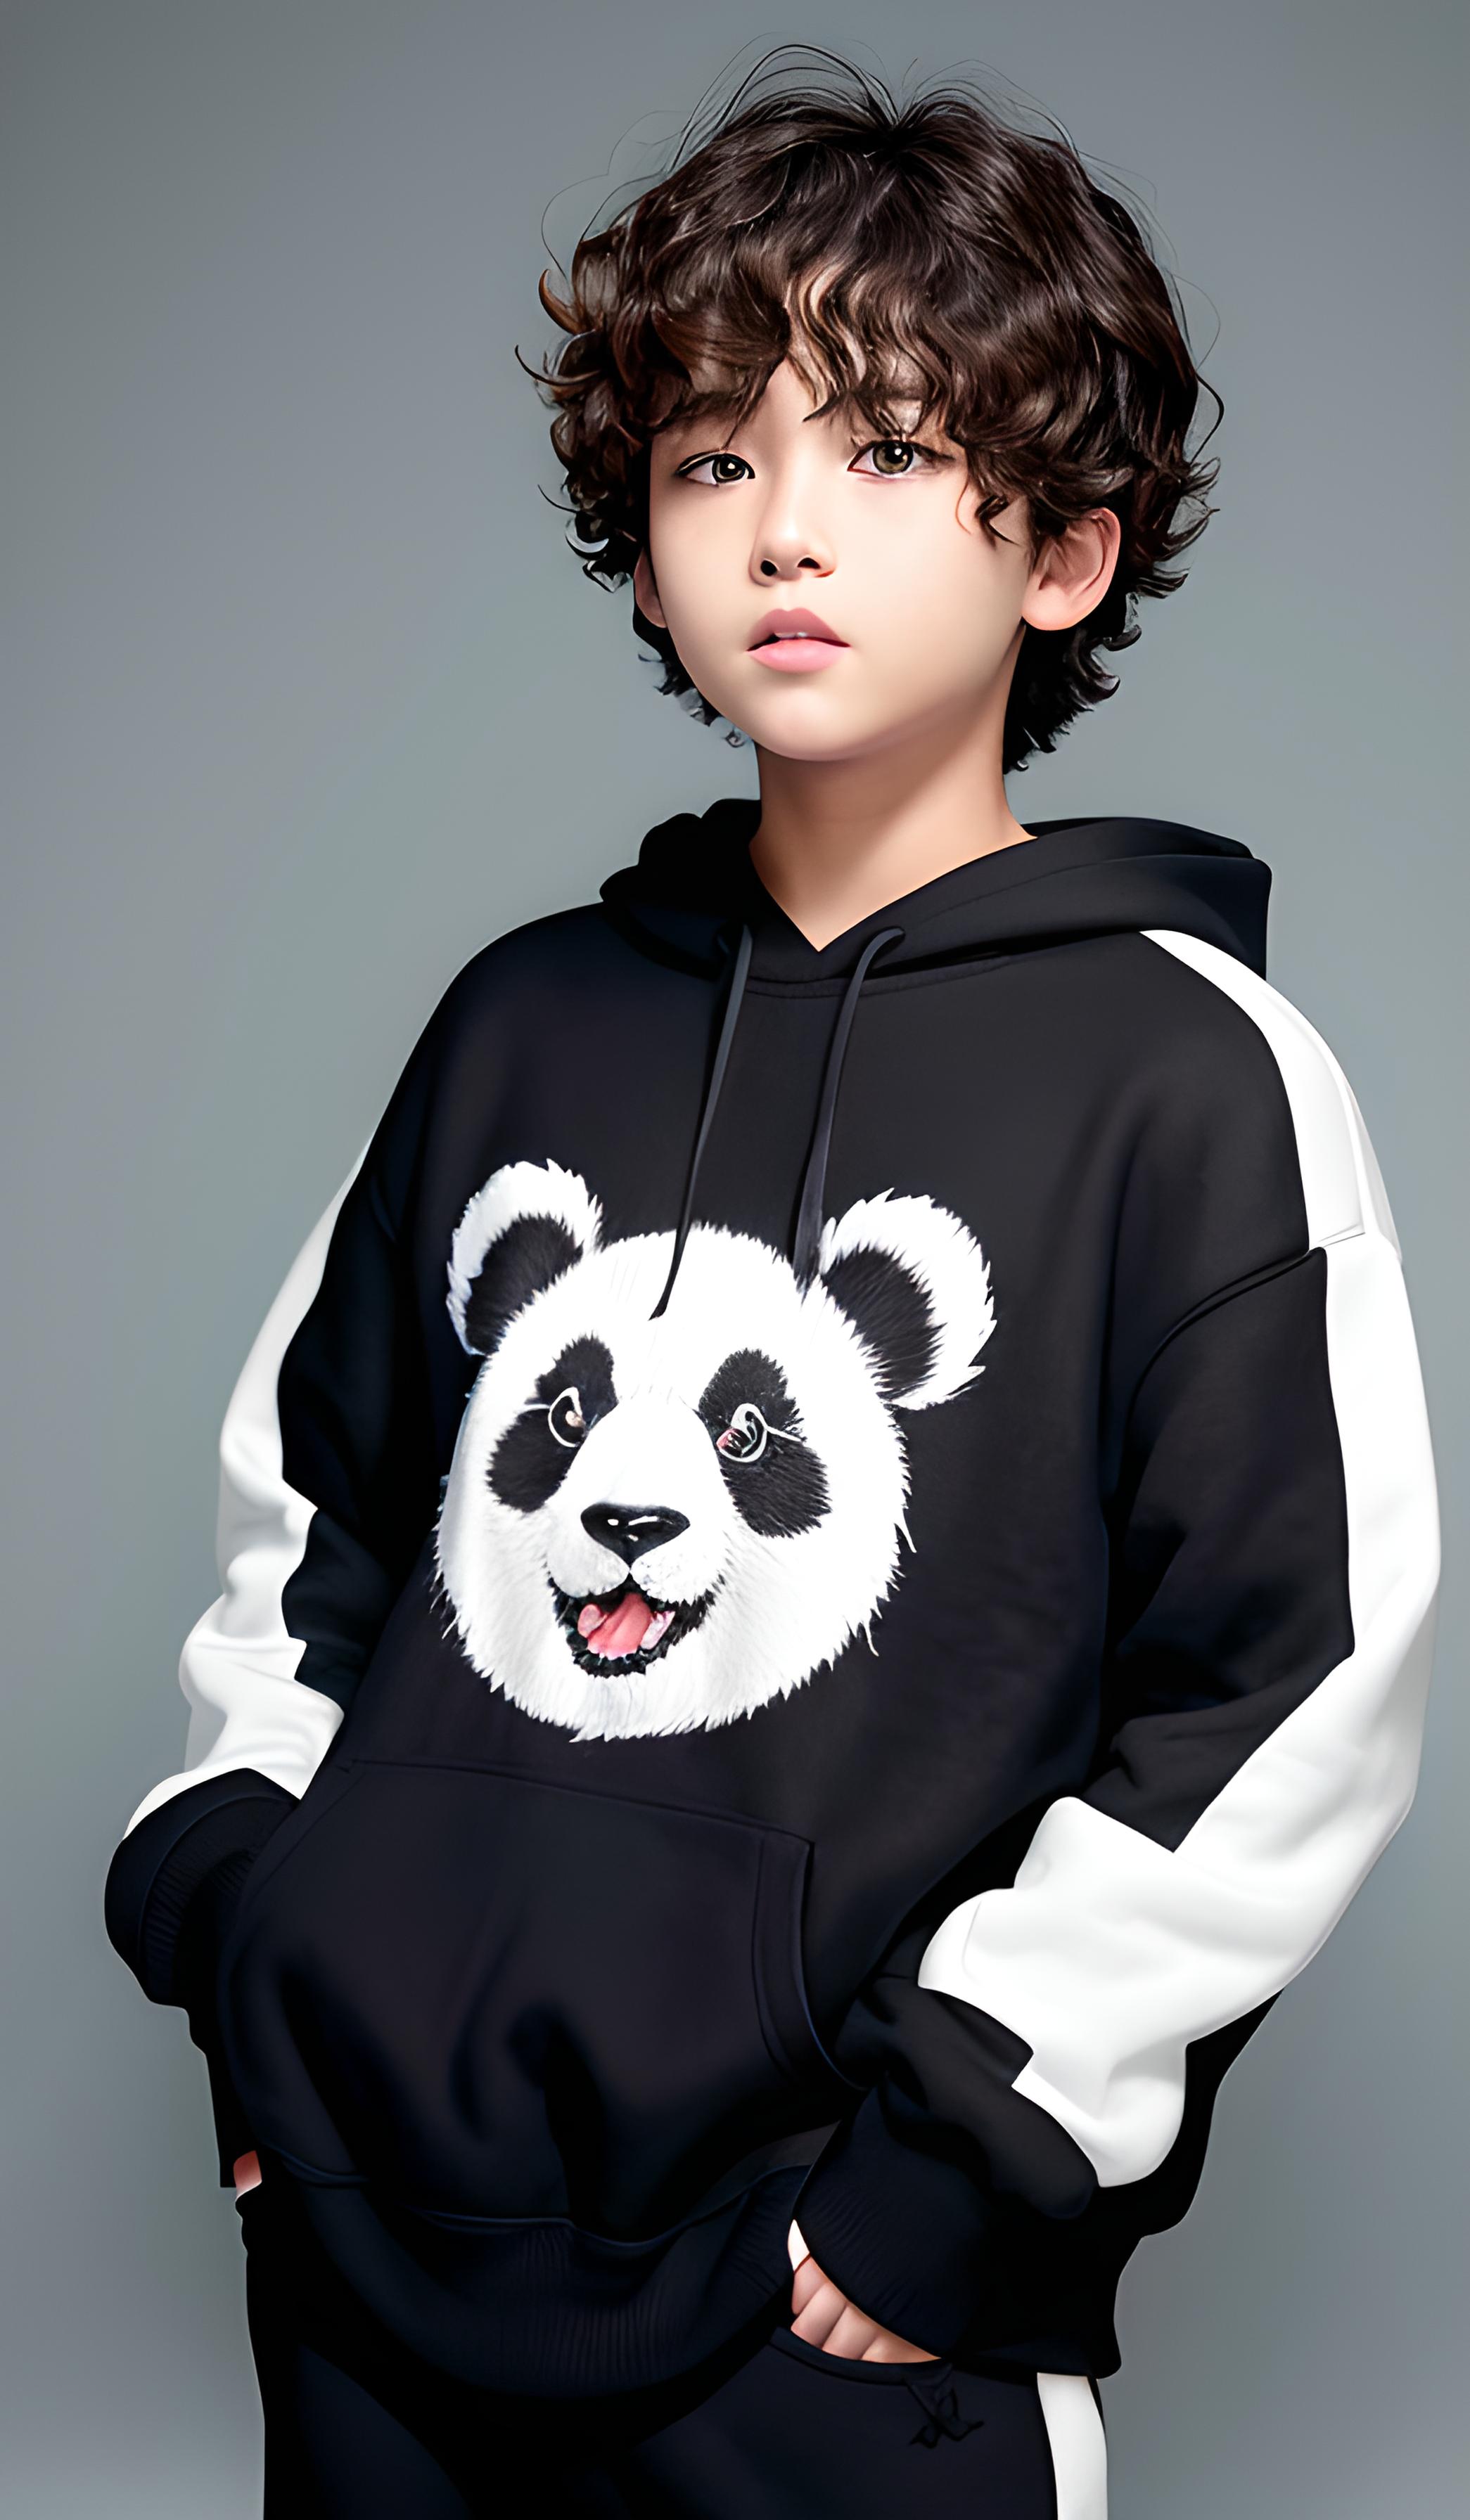 熊猫卡通套装 可爱童趣又酷帅十足 很实用